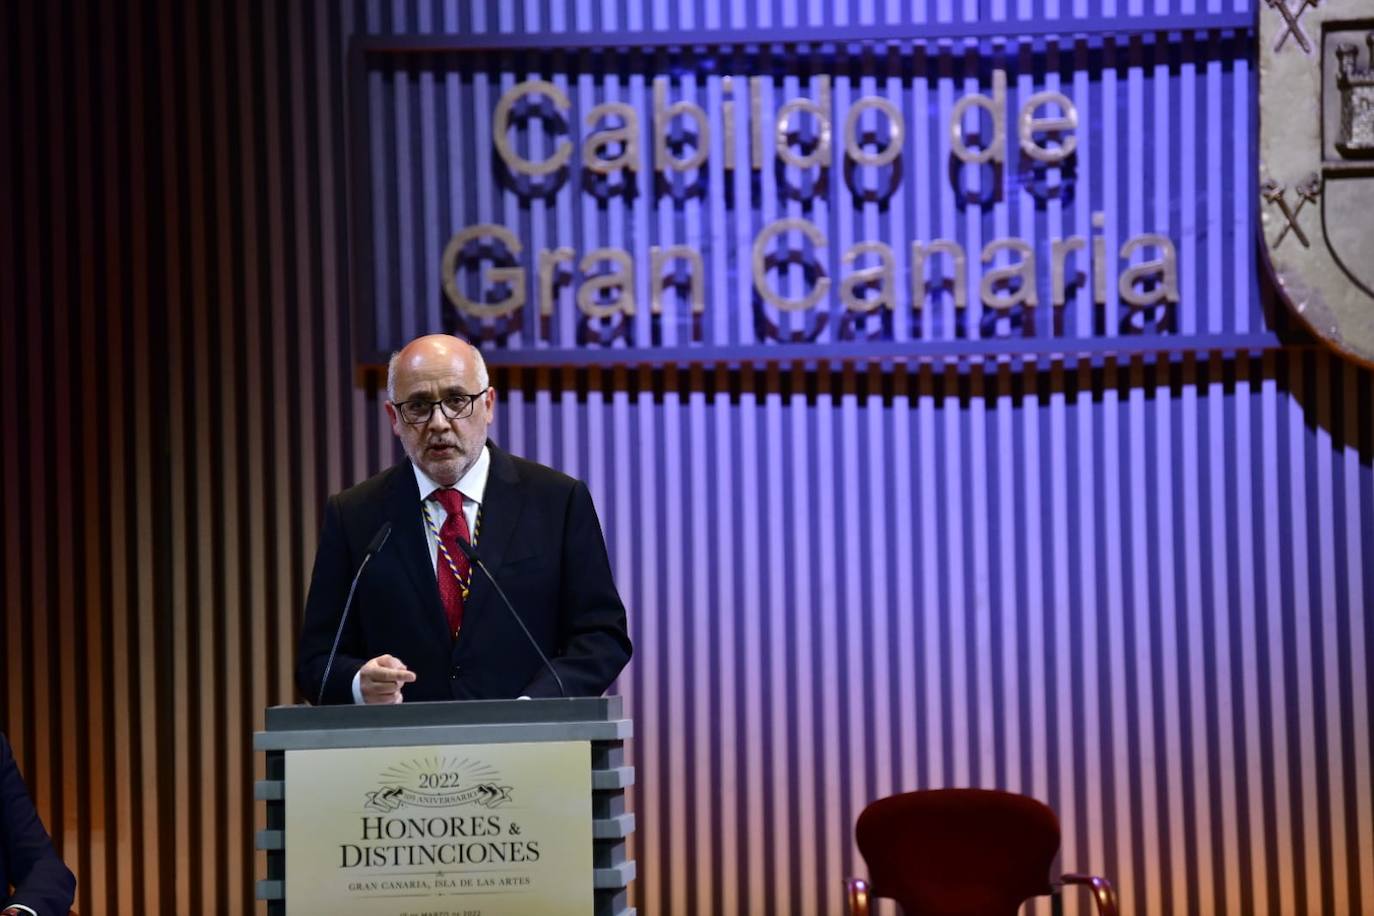 Fotos: Entrega de Honores y Distinciones del Cabildo de Gran Canaria 2022